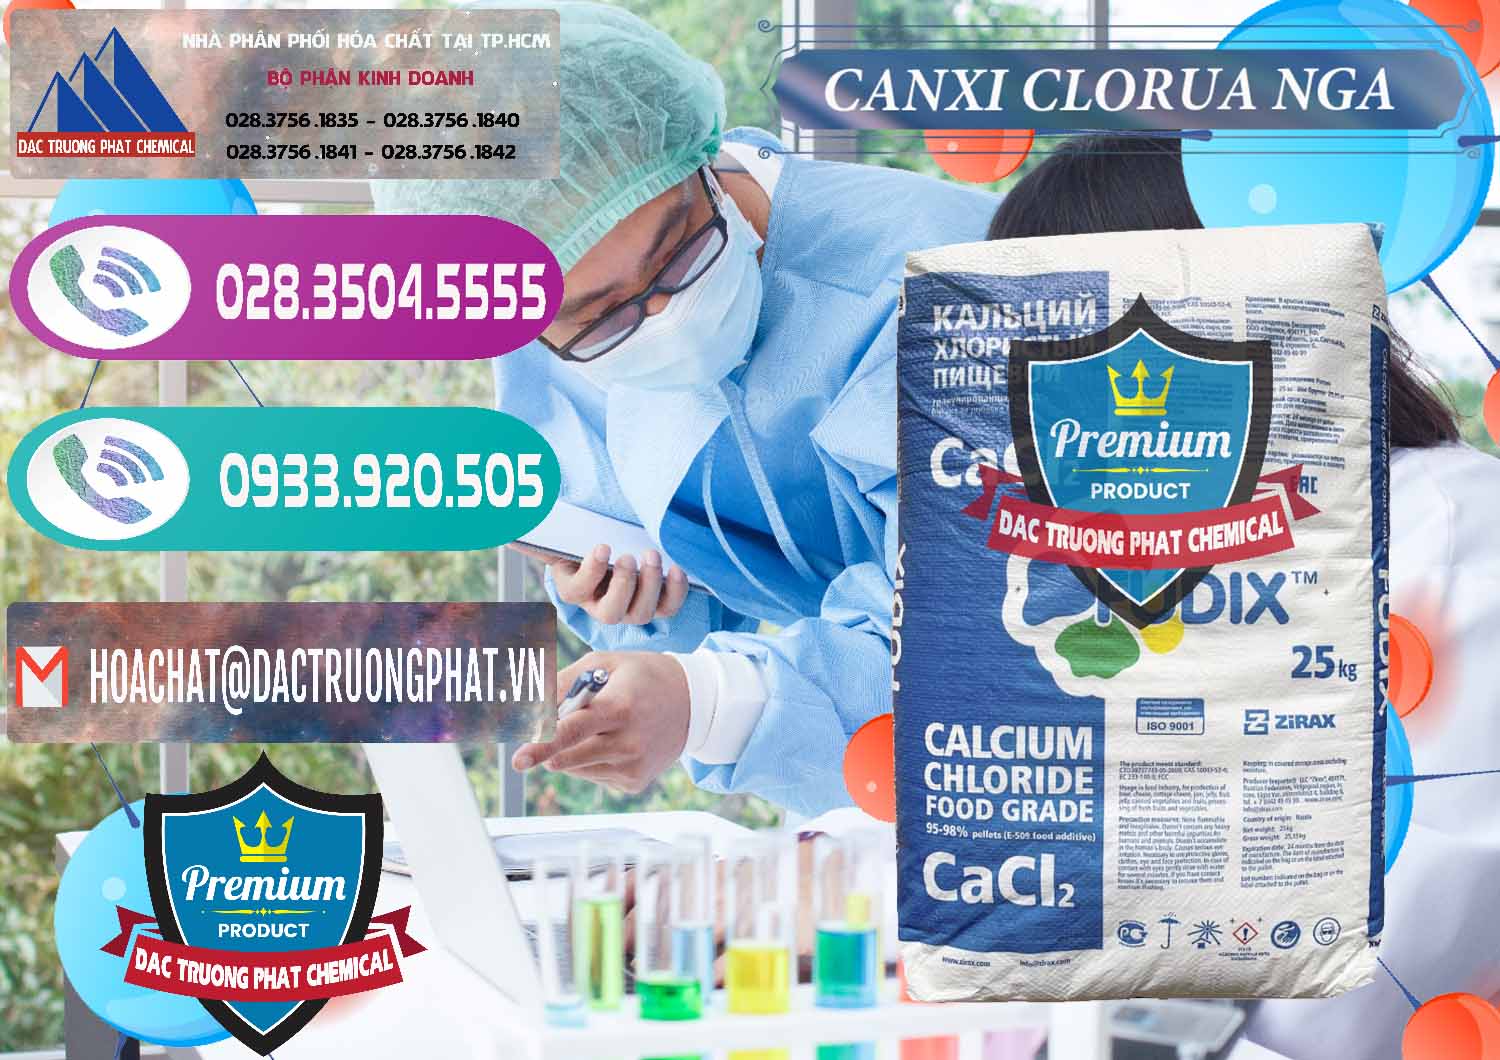 Nơi chuyên kinh doanh và bán CaCl2 – Canxi Clorua Nga Russia - 0430 - Đơn vị chuyên phân phối _ cung ứng hóa chất tại TP.HCM - hoachatxulynuoc.com